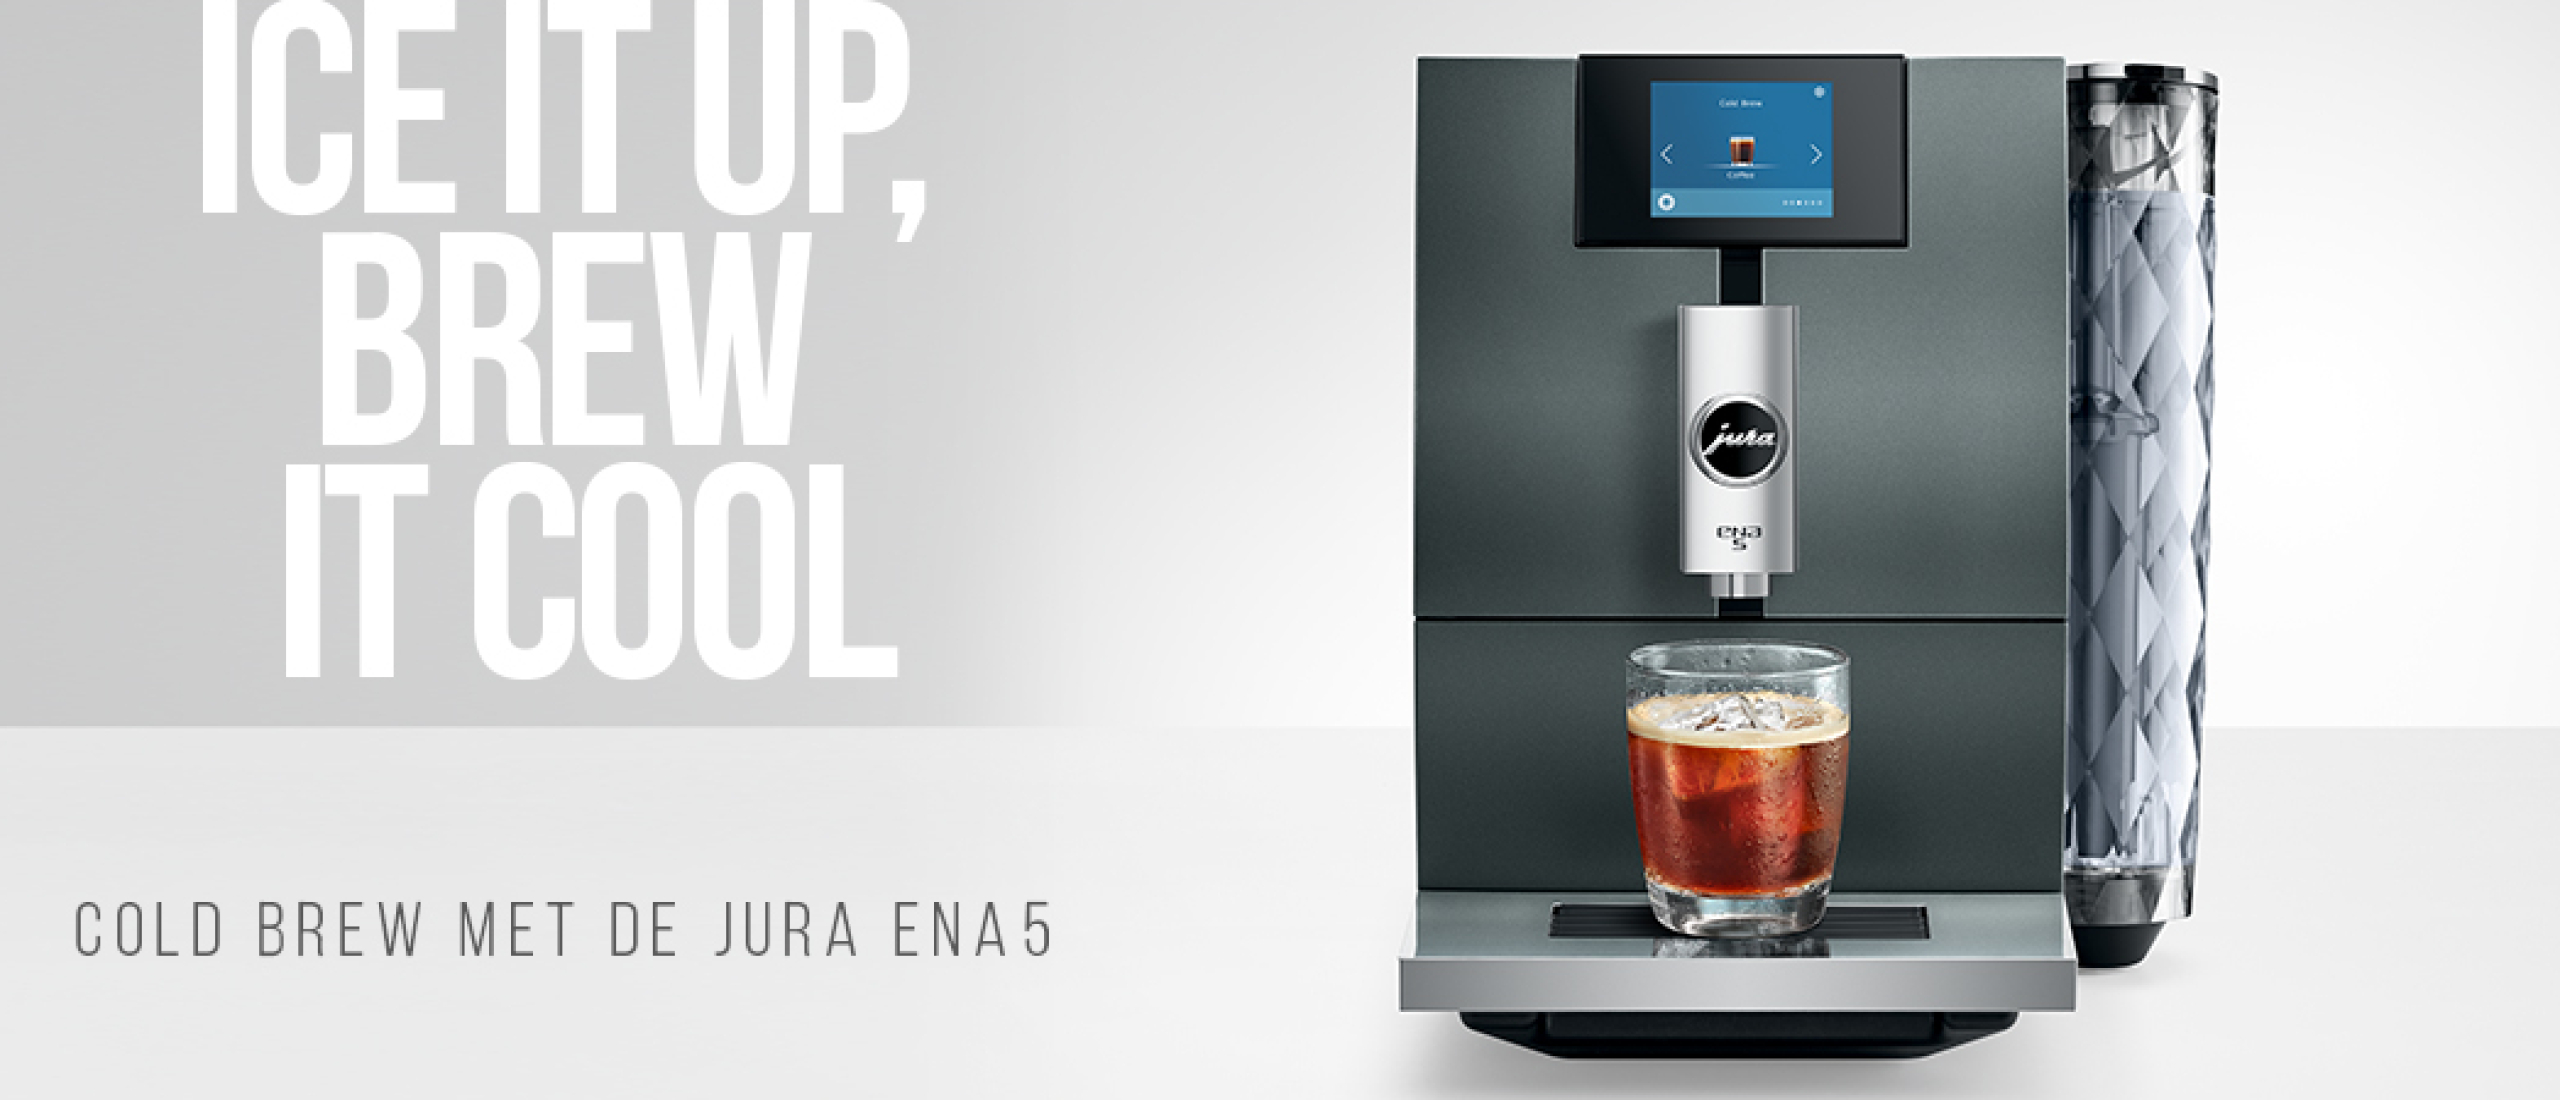 Maak kennis met de JURA ENA 5 (EA): bereid Hot, cold en zelfs light brew met deze innovatieve koffiemachine